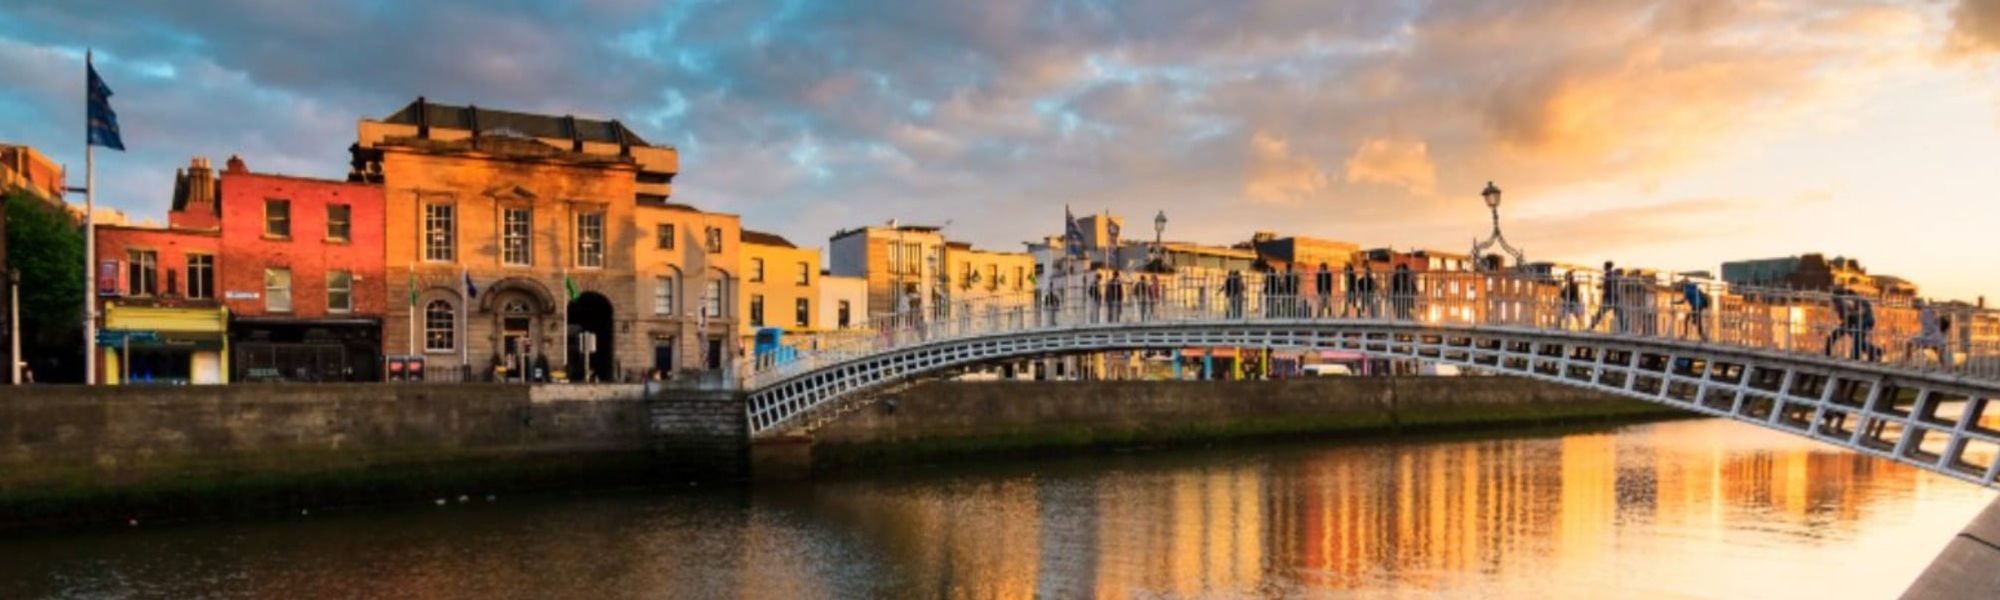 Dublin Banner Image